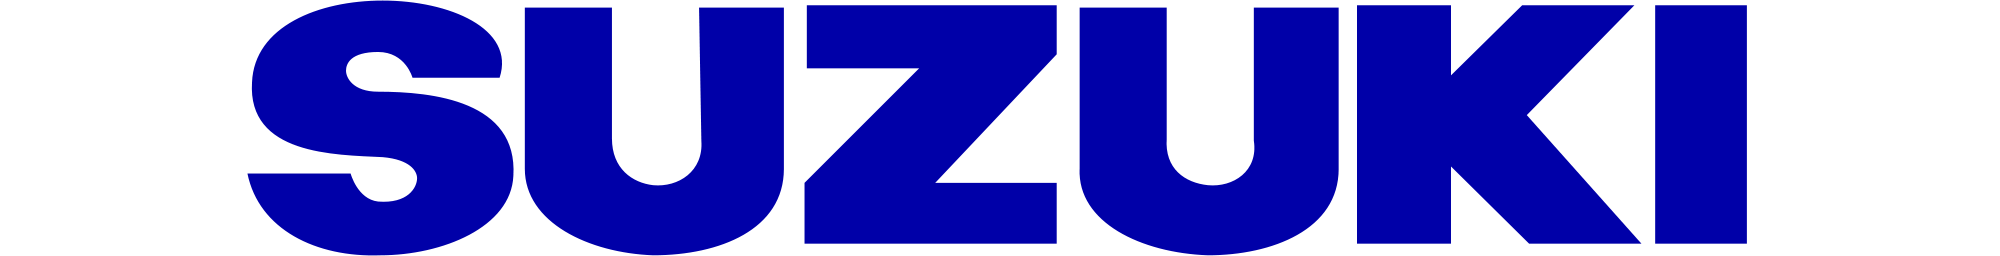 Suzuki Logo Blue Background PNG